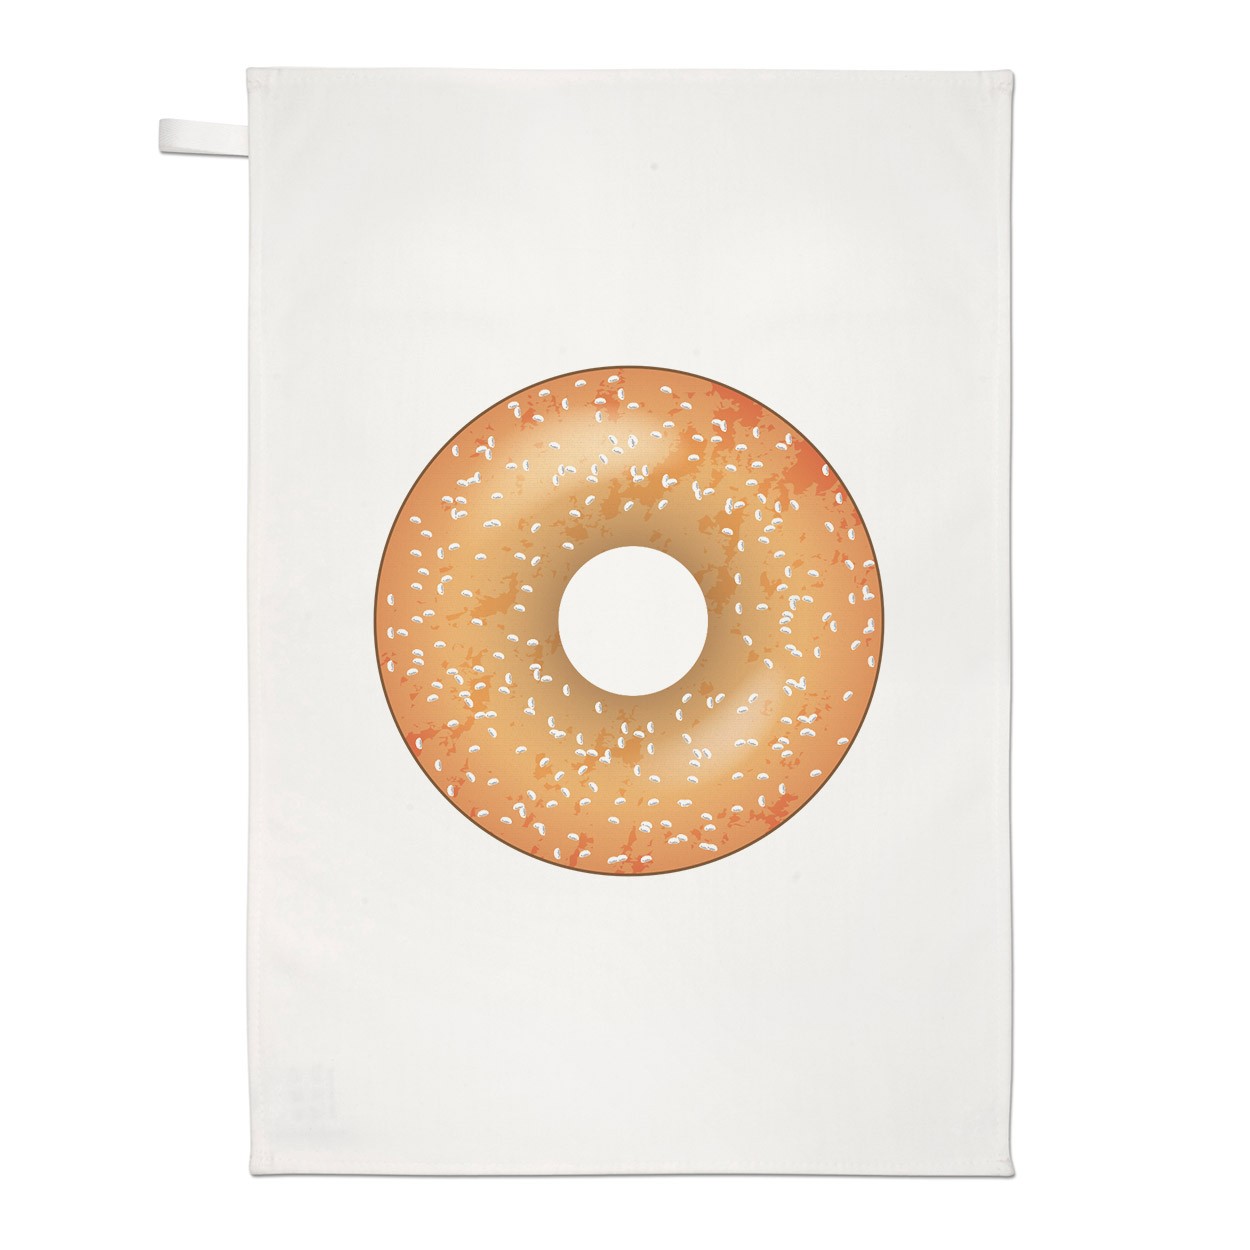 Sprinkled Glazed Doughnut Donut Tea Towel Dish Cloth